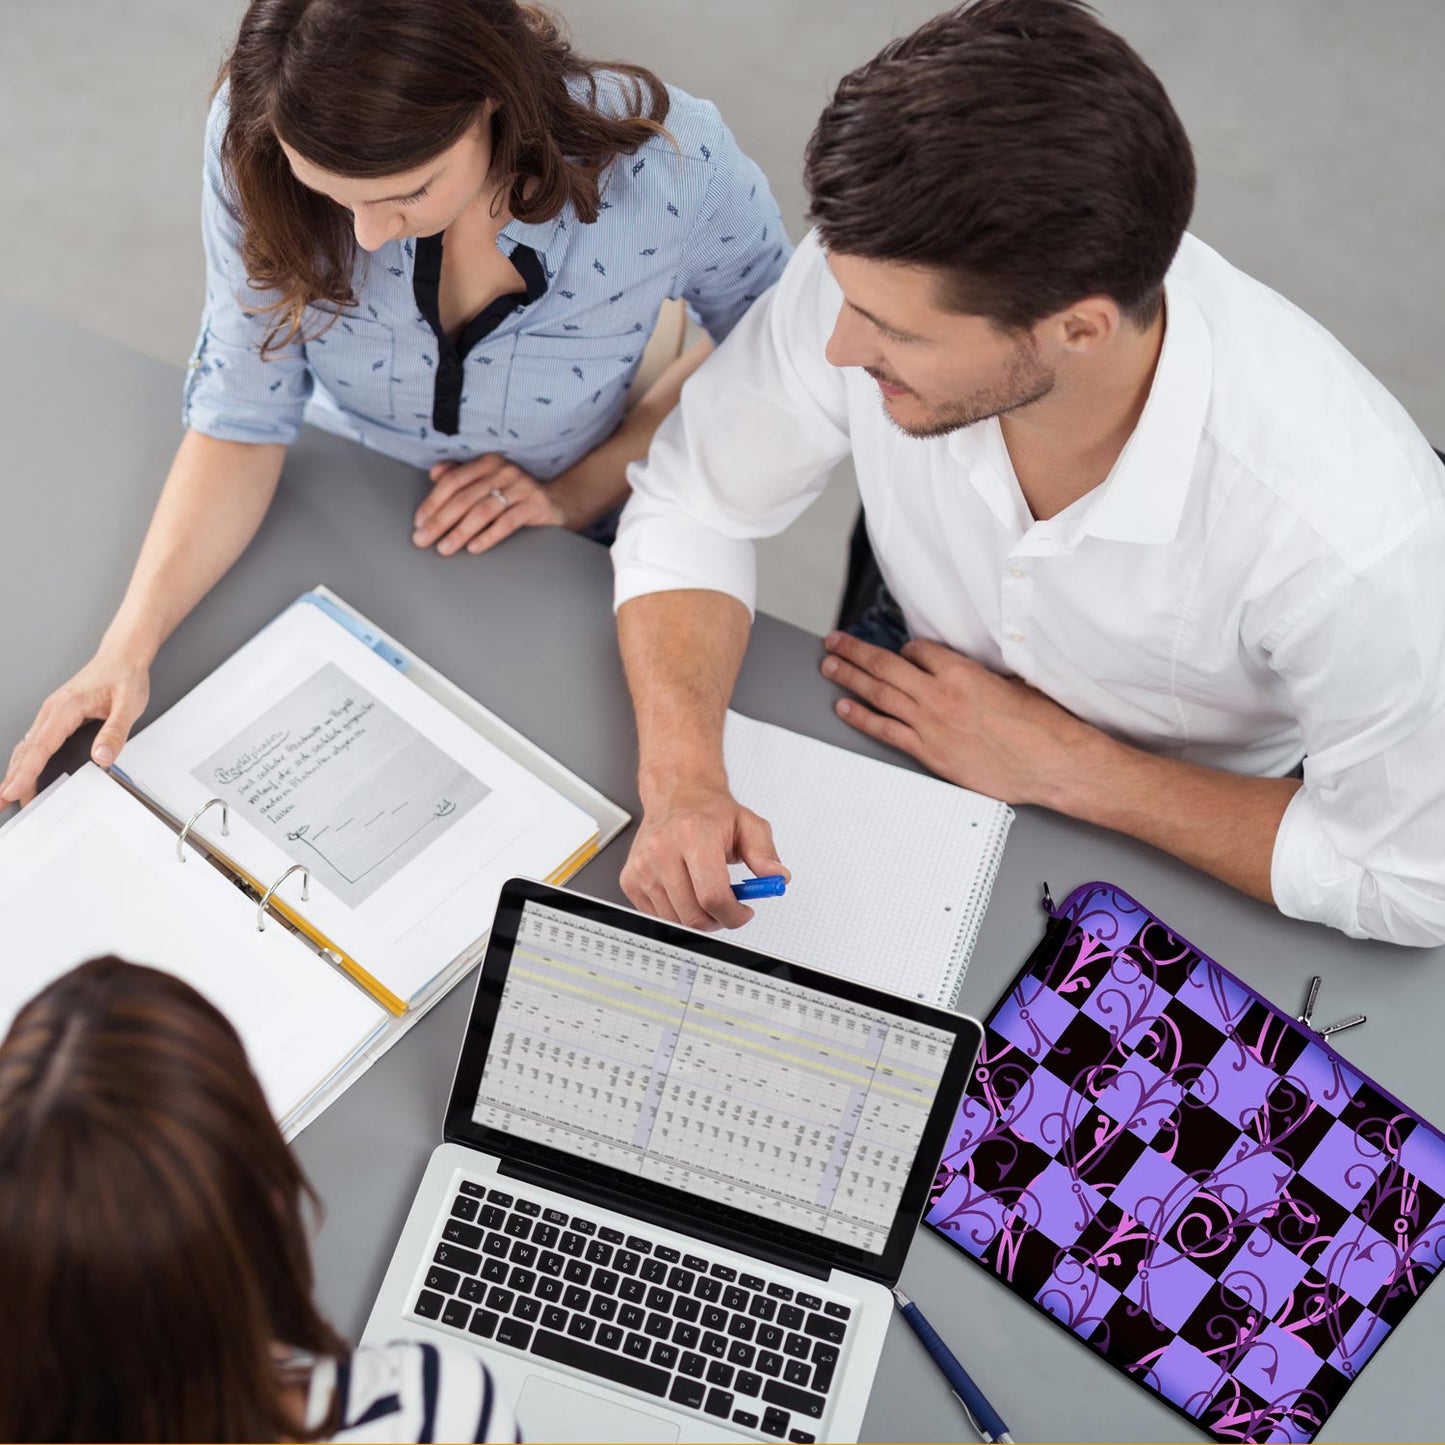 LS113 Purple Designer Schutzhülle für Laptop in violett als Business-Zubehör im Büro, bei Kunden und auf Dienstreisen